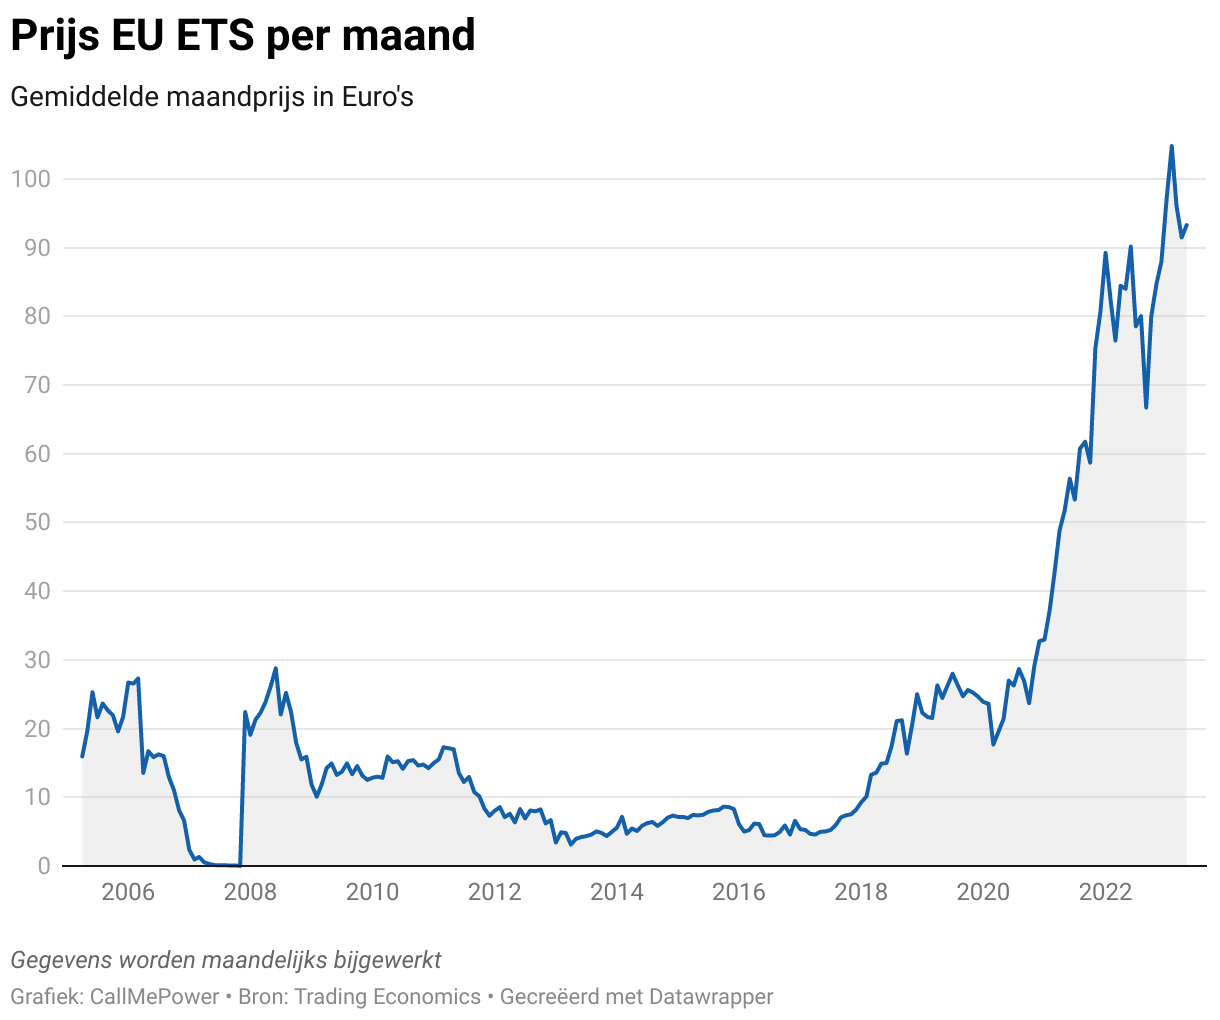 Grafiek met de prijs voor EU ETS sinds 2005